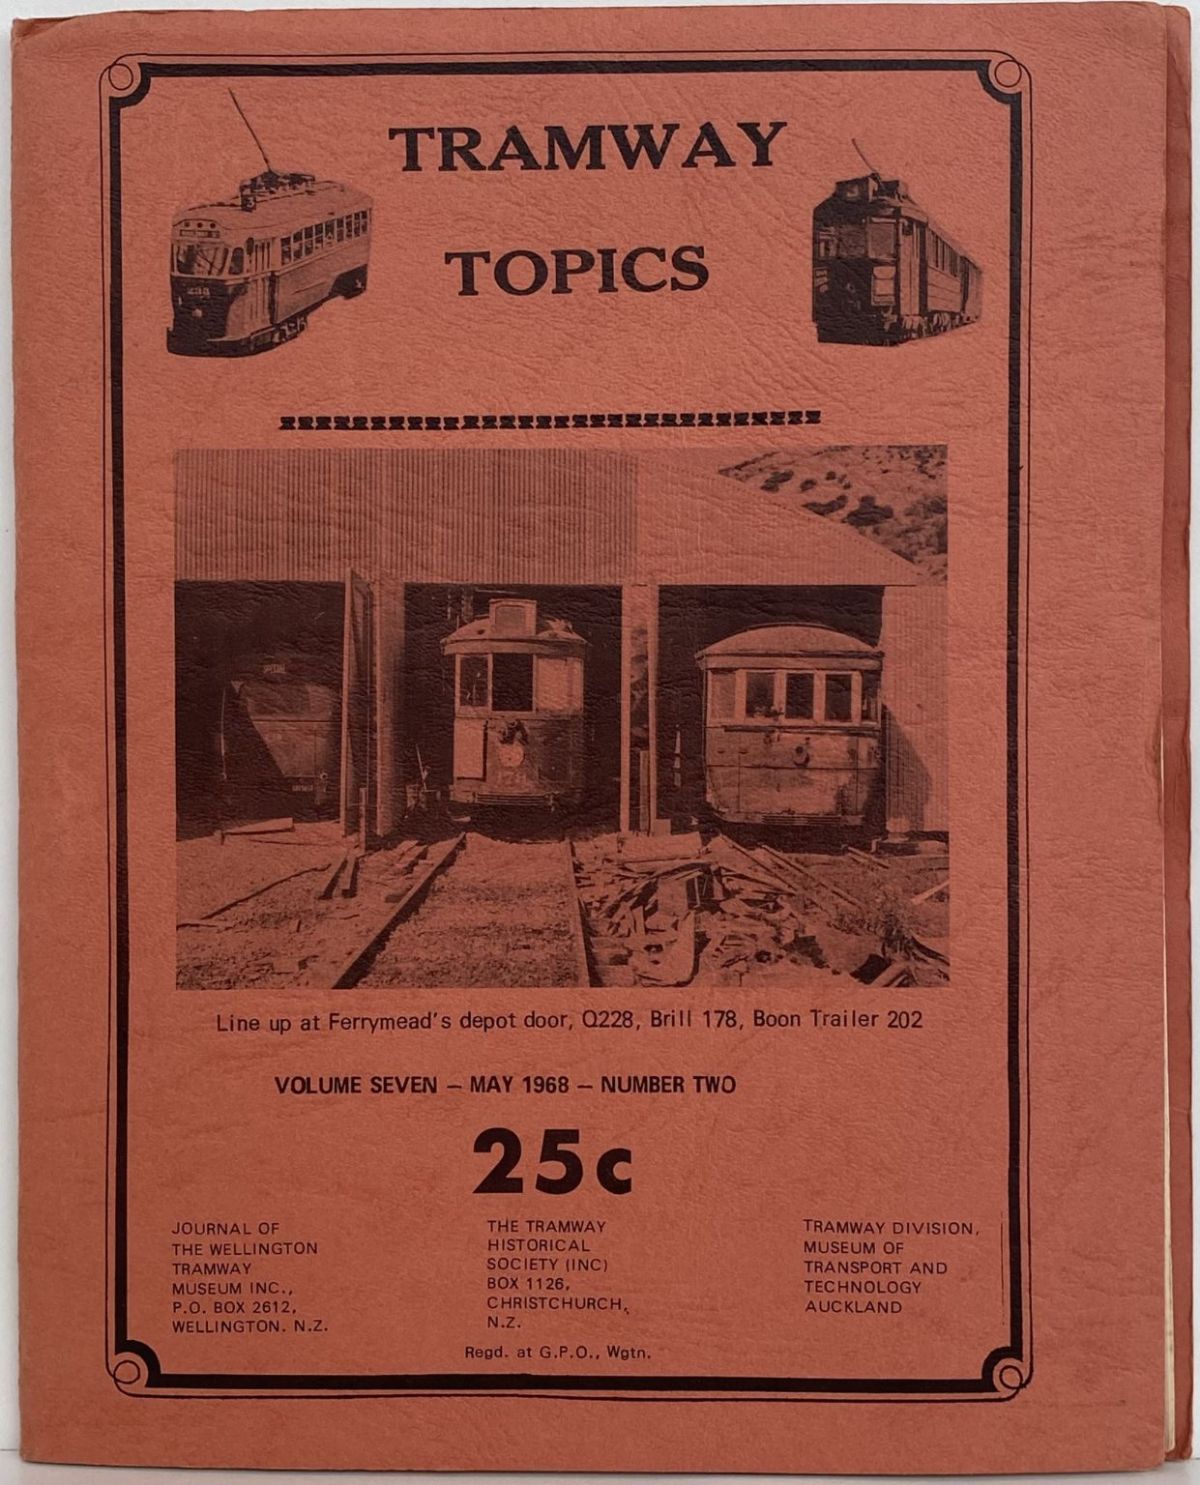 TRAMWAY TOPICS Vol 7, No 2, May 1968